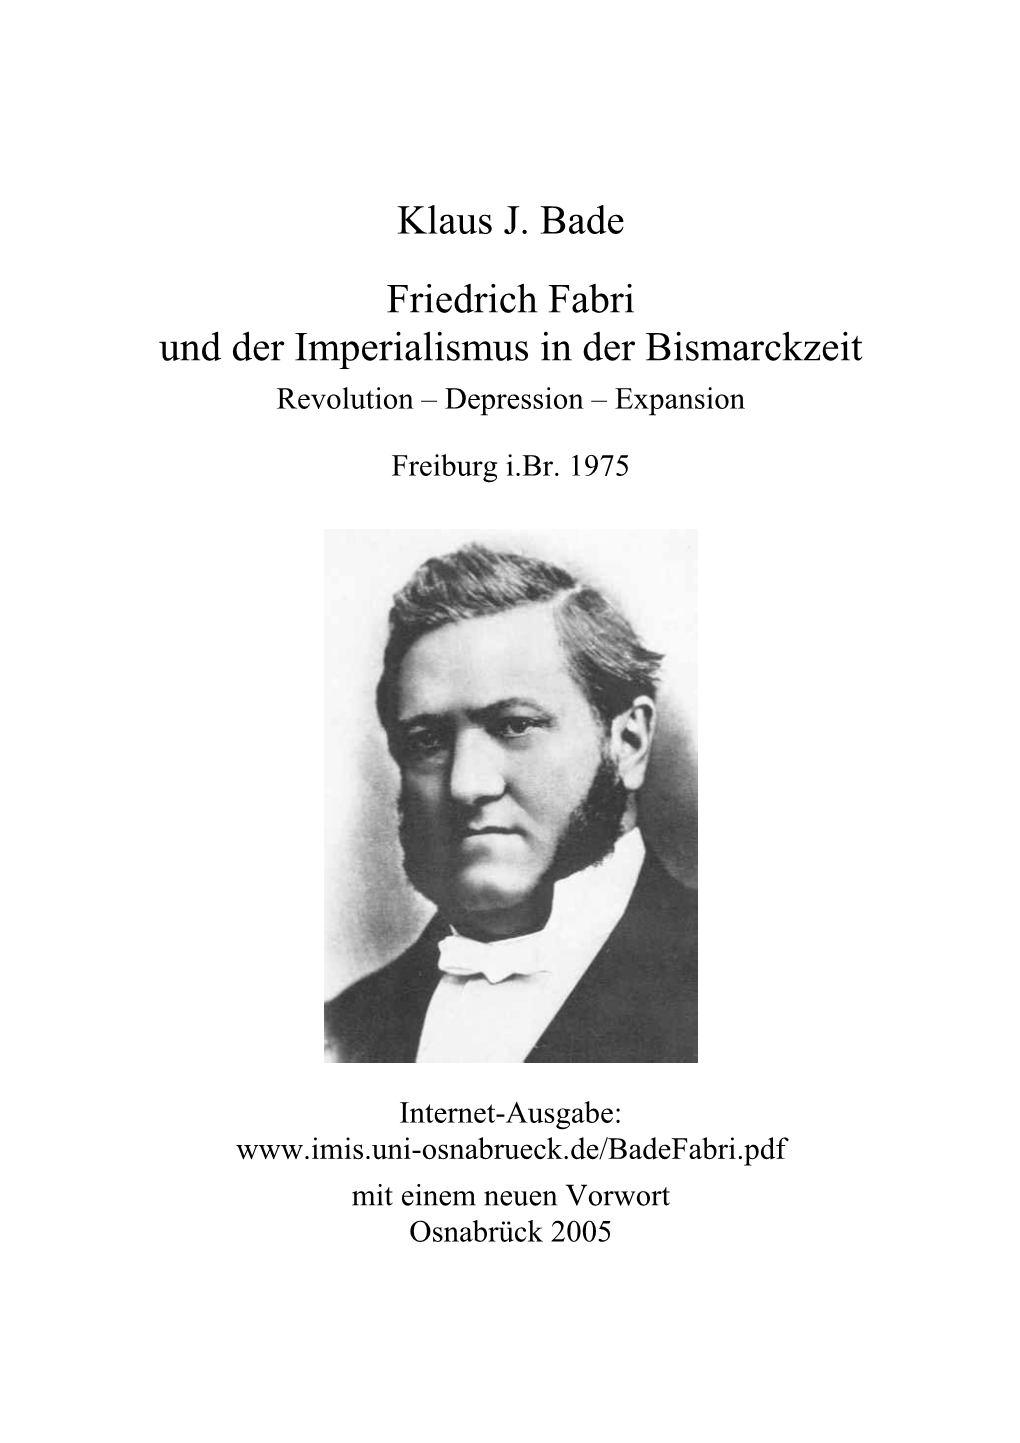 Friedrich Fabri Und Der Imperialismus in Der Bismarckzeit. Revolution – Depression – Expansion, Atlantis Verlag, Freiburg I.Br